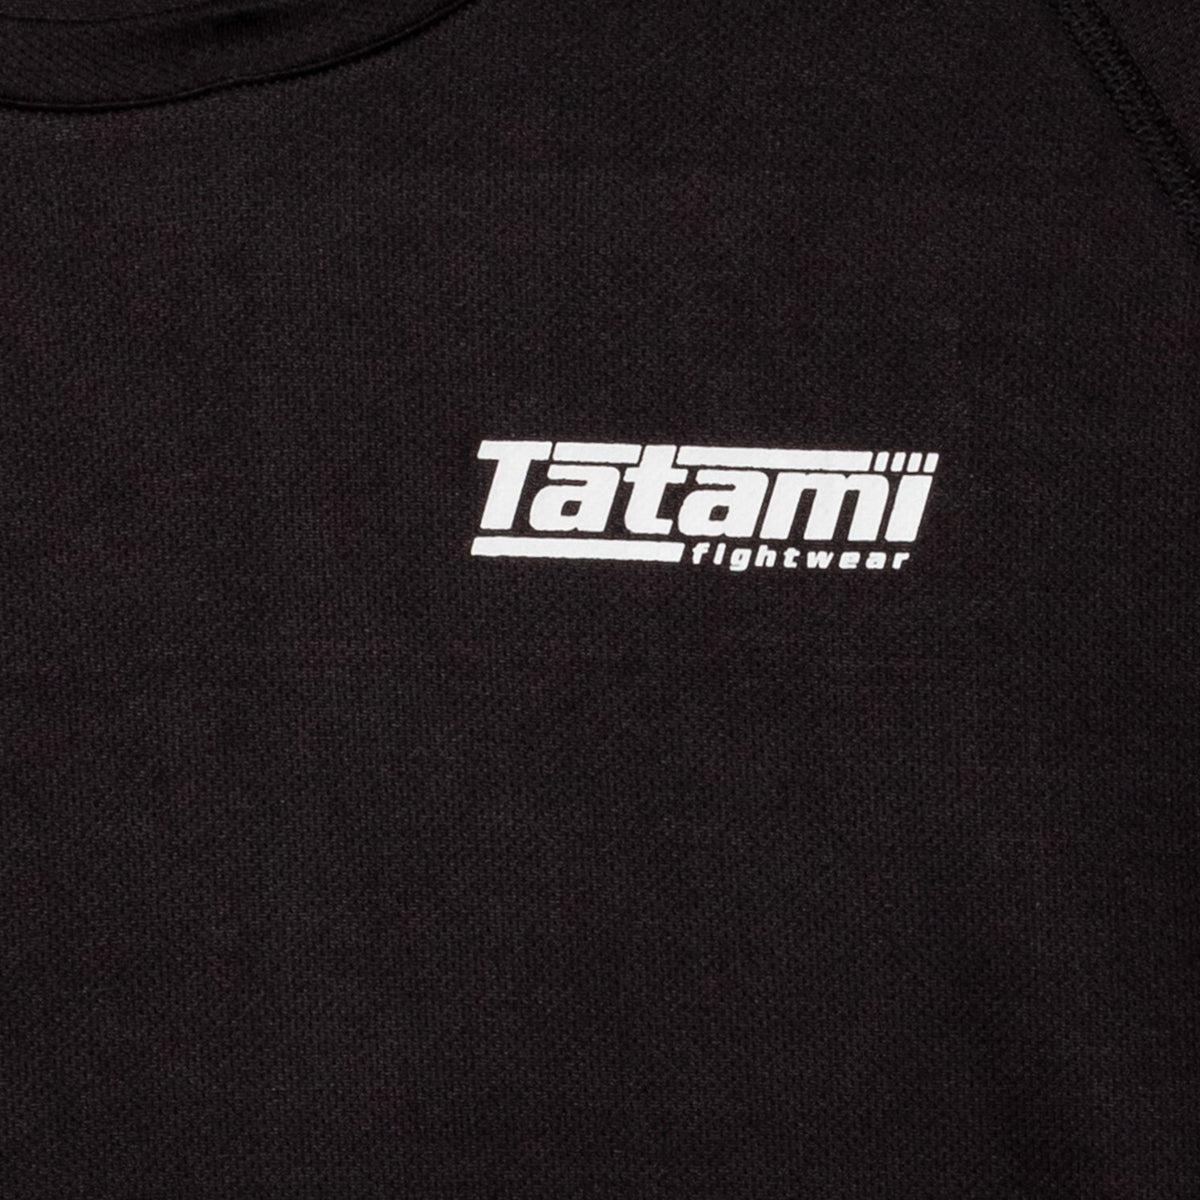 Tatami Fightwear Dry Fit T-Shirt - Charcoal Tatami Fightwear